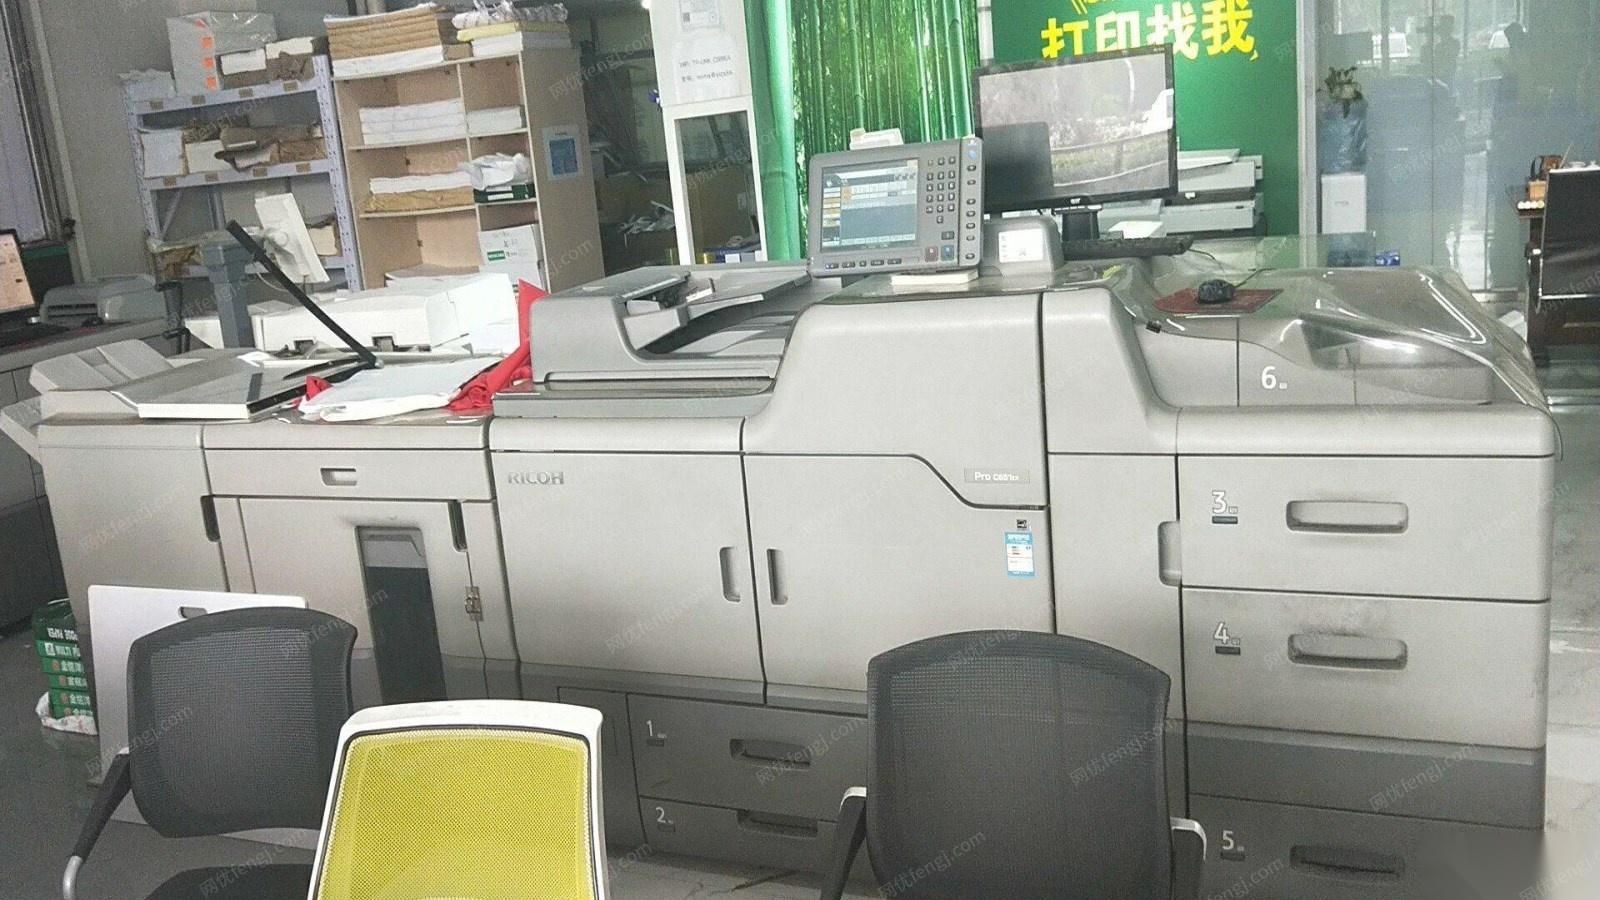 北京朝阳区理光c651数码印刷机出售